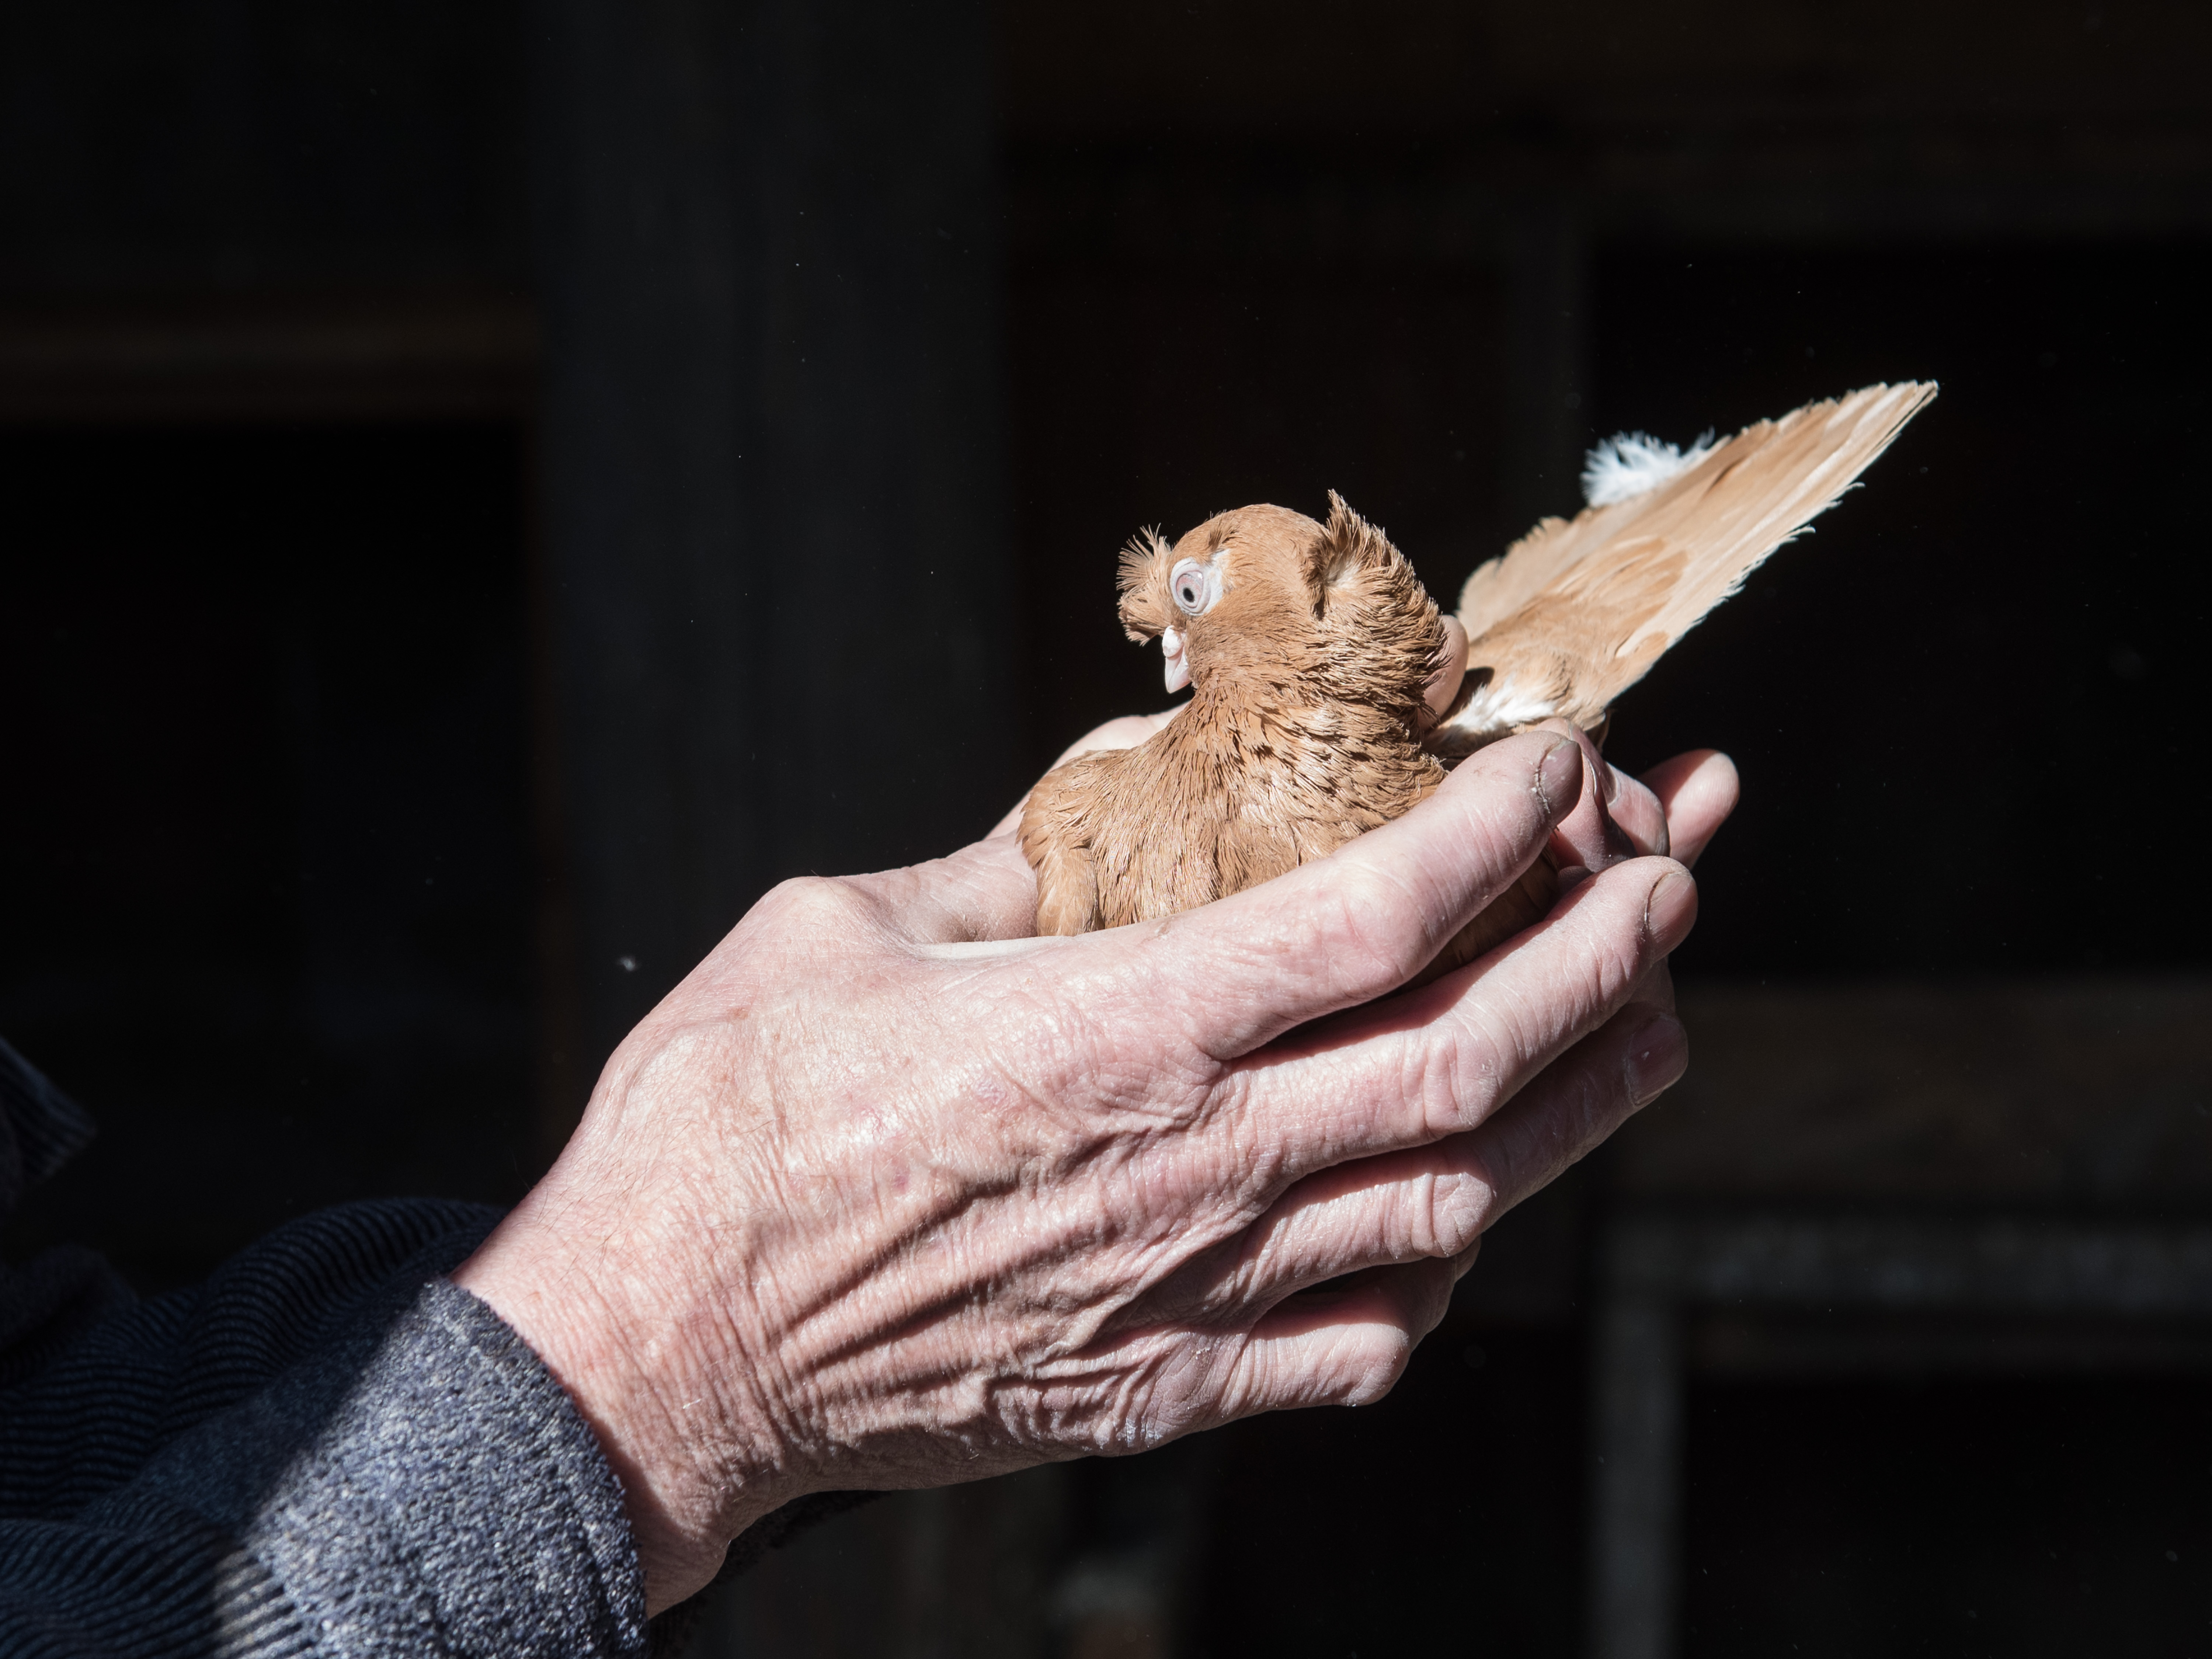 «Лучше рыбалки!»: пенсионер из Березовки всю жизнь разводит голубей